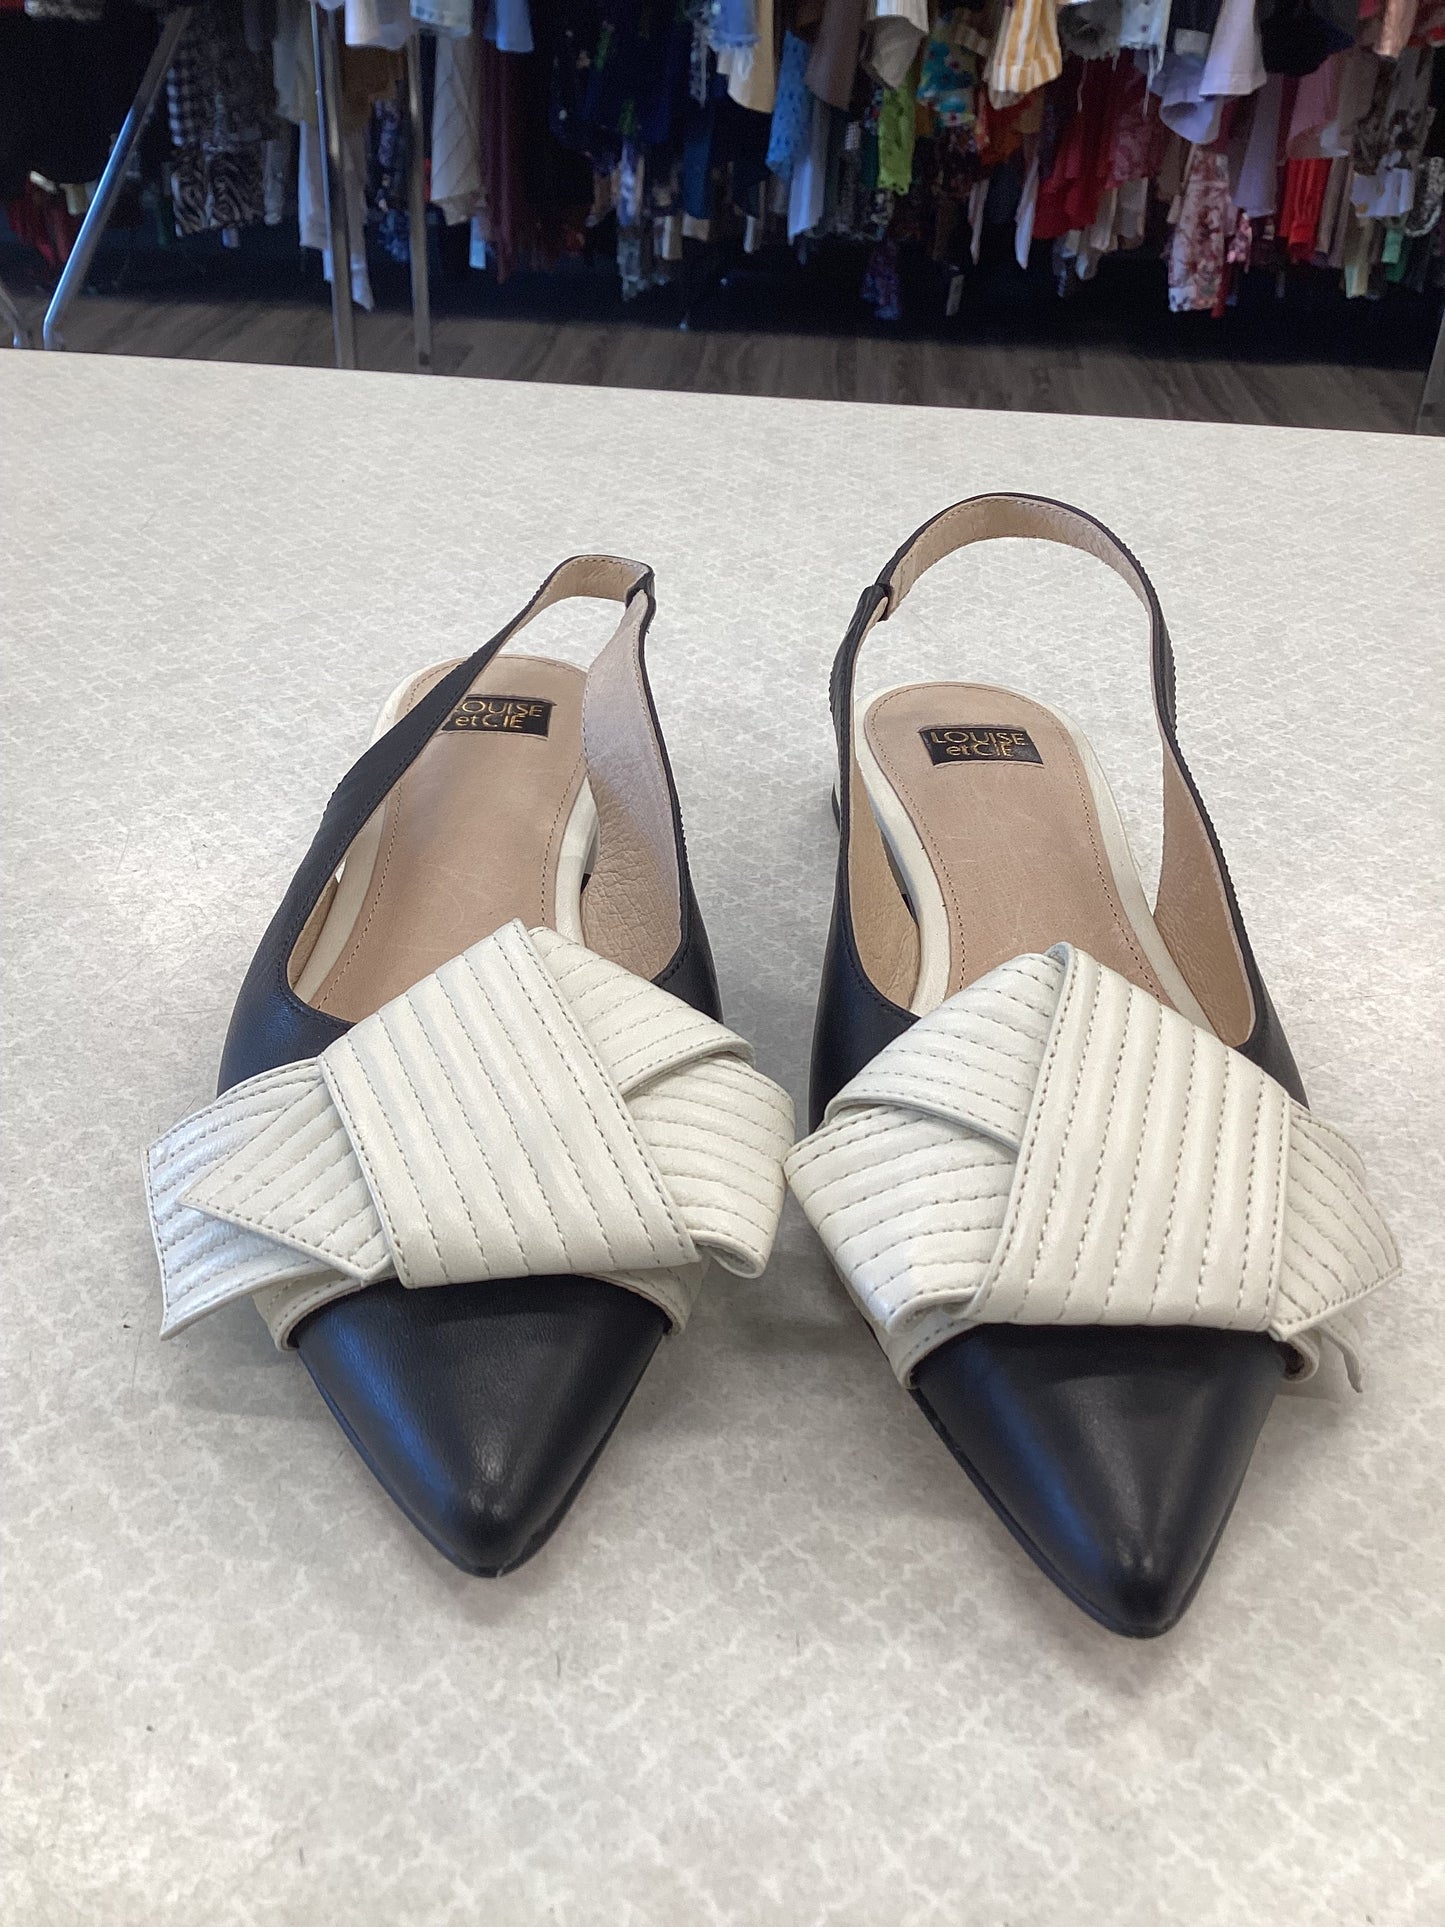 Black & White Shoes Flats Louise Et Cie, Size 7